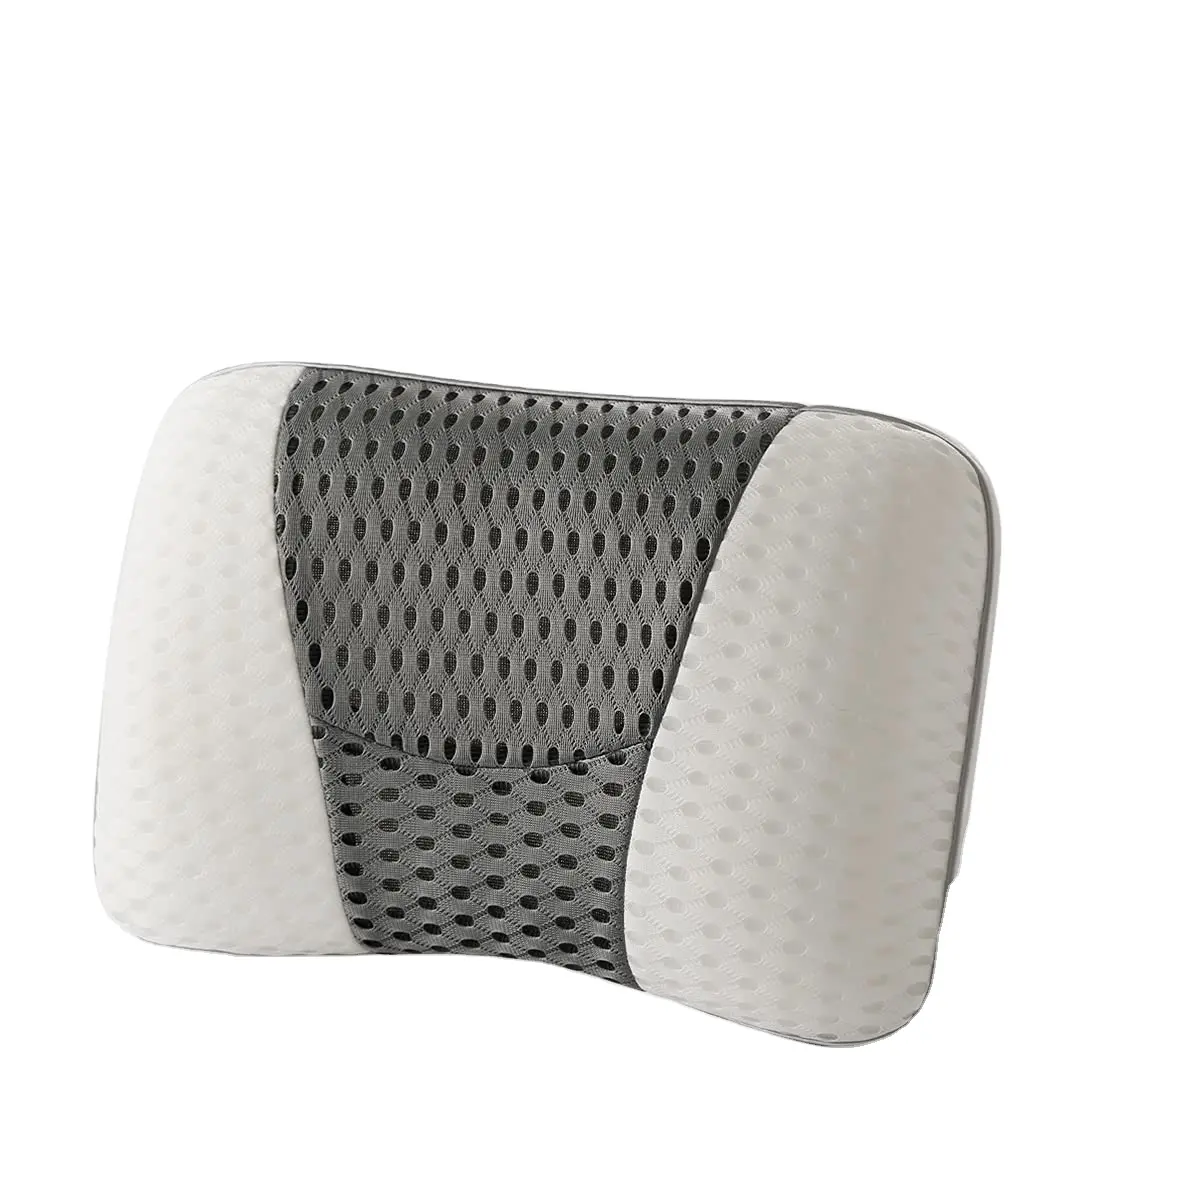 Preço por atacado 3D Air Mesh Banheira Travesseiro Anti Slip Spa Banheira Travesseiro De Banho